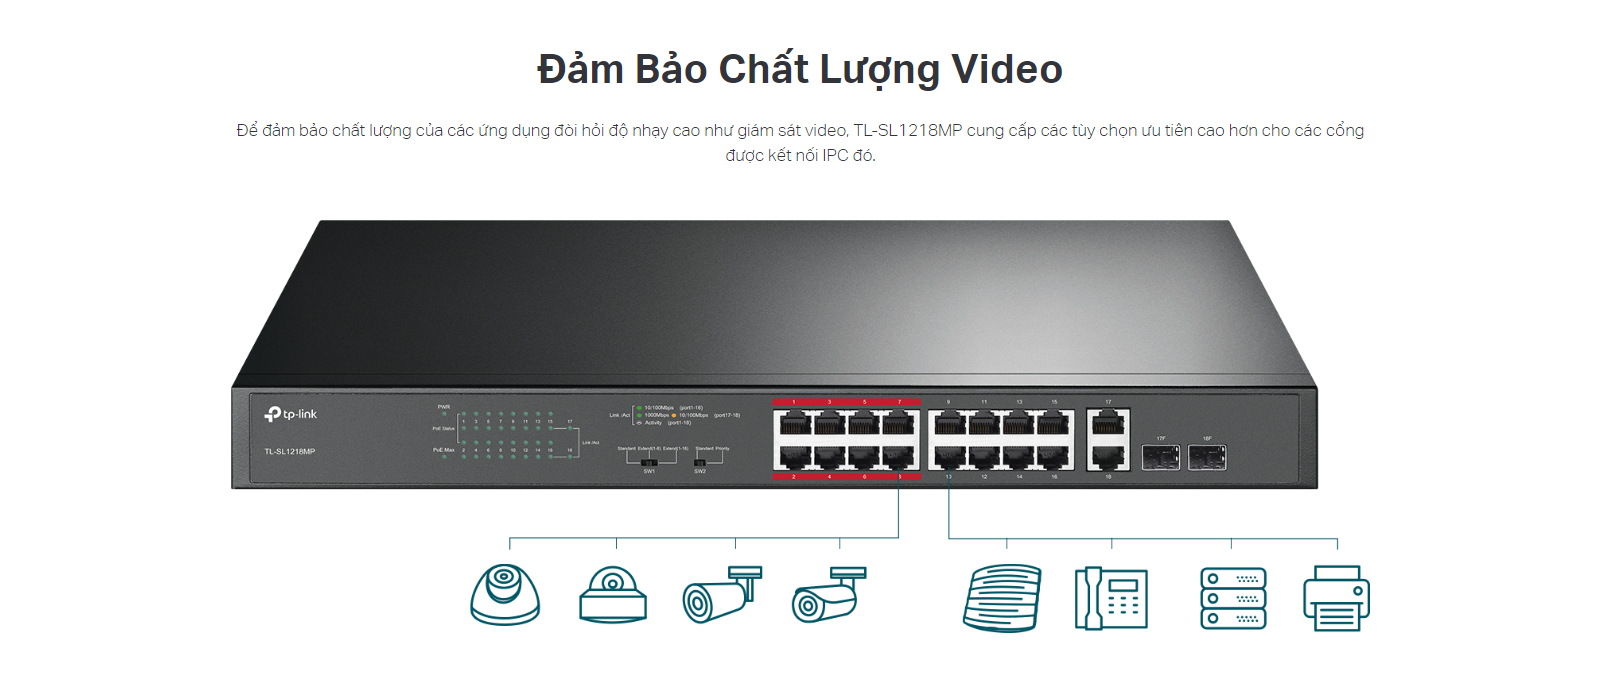 Switch Tp-Link TL-SL1218MP giúp đảm bảo chất lượng video